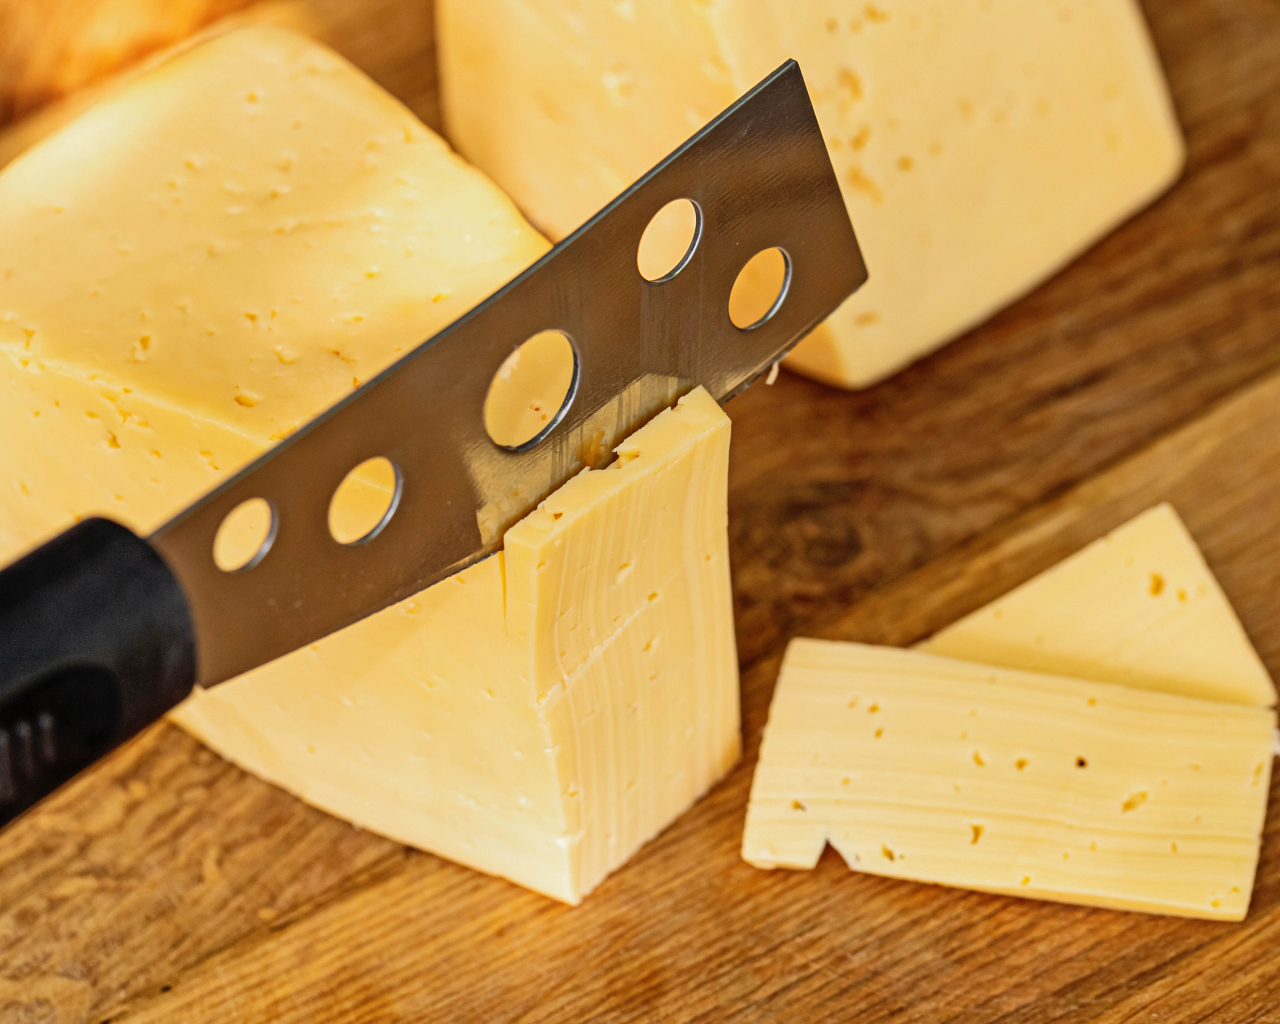 Твердый сыр с ножом на столе